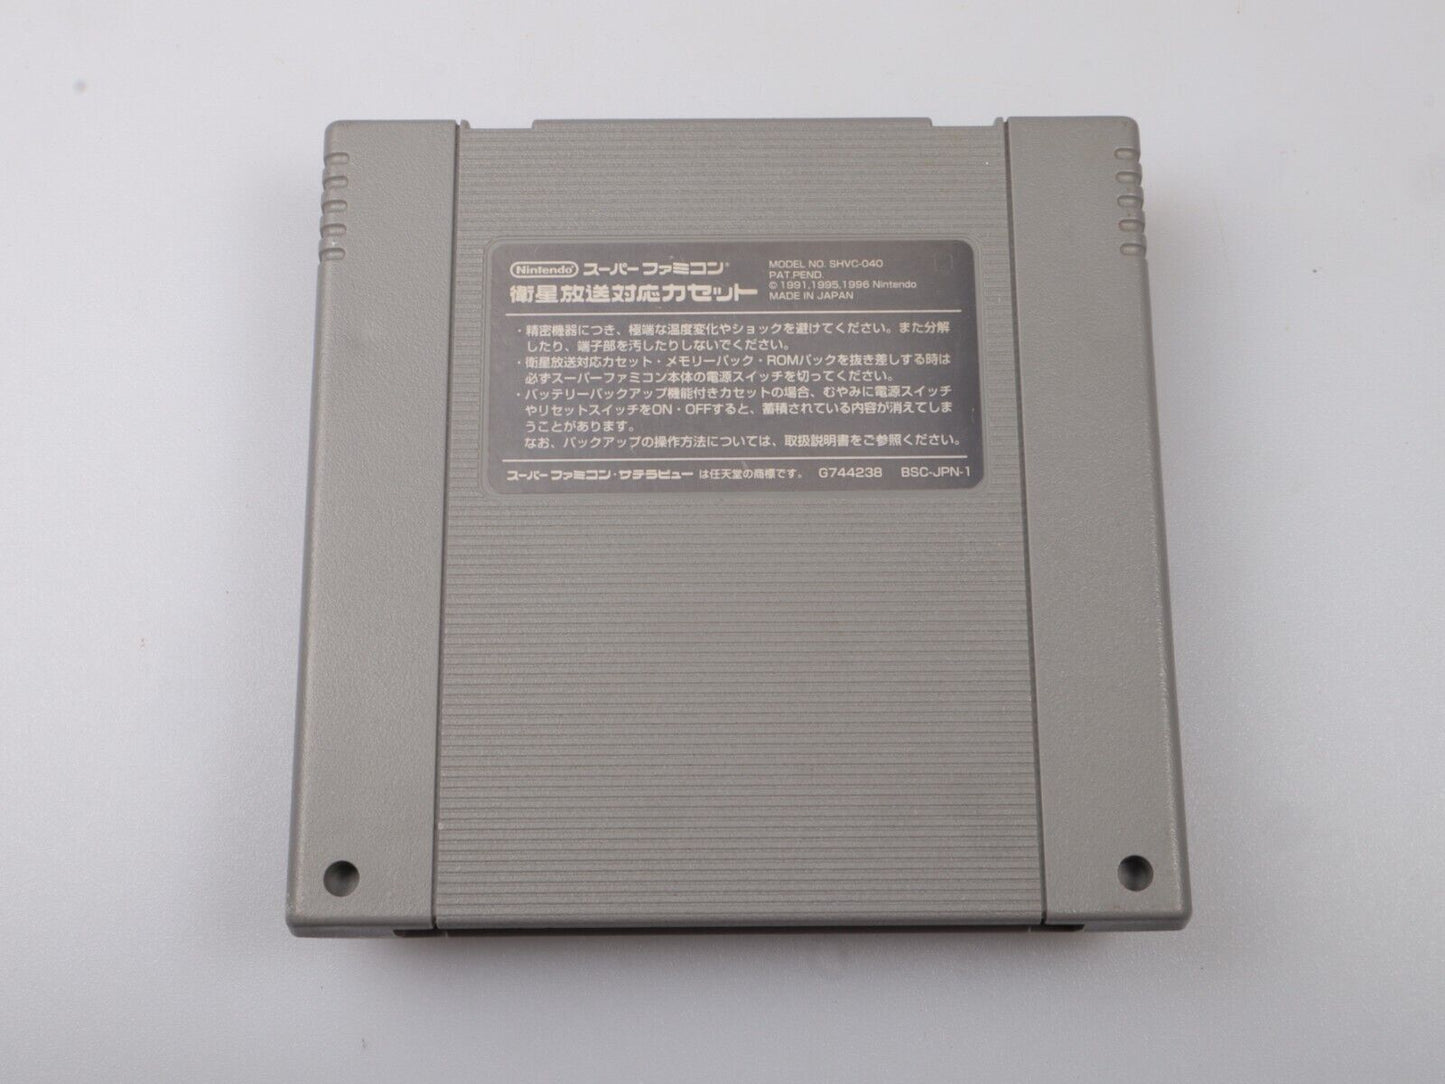 SNES | Derbyhengst 96 | JAP | Nintendo Nes-cartridge 